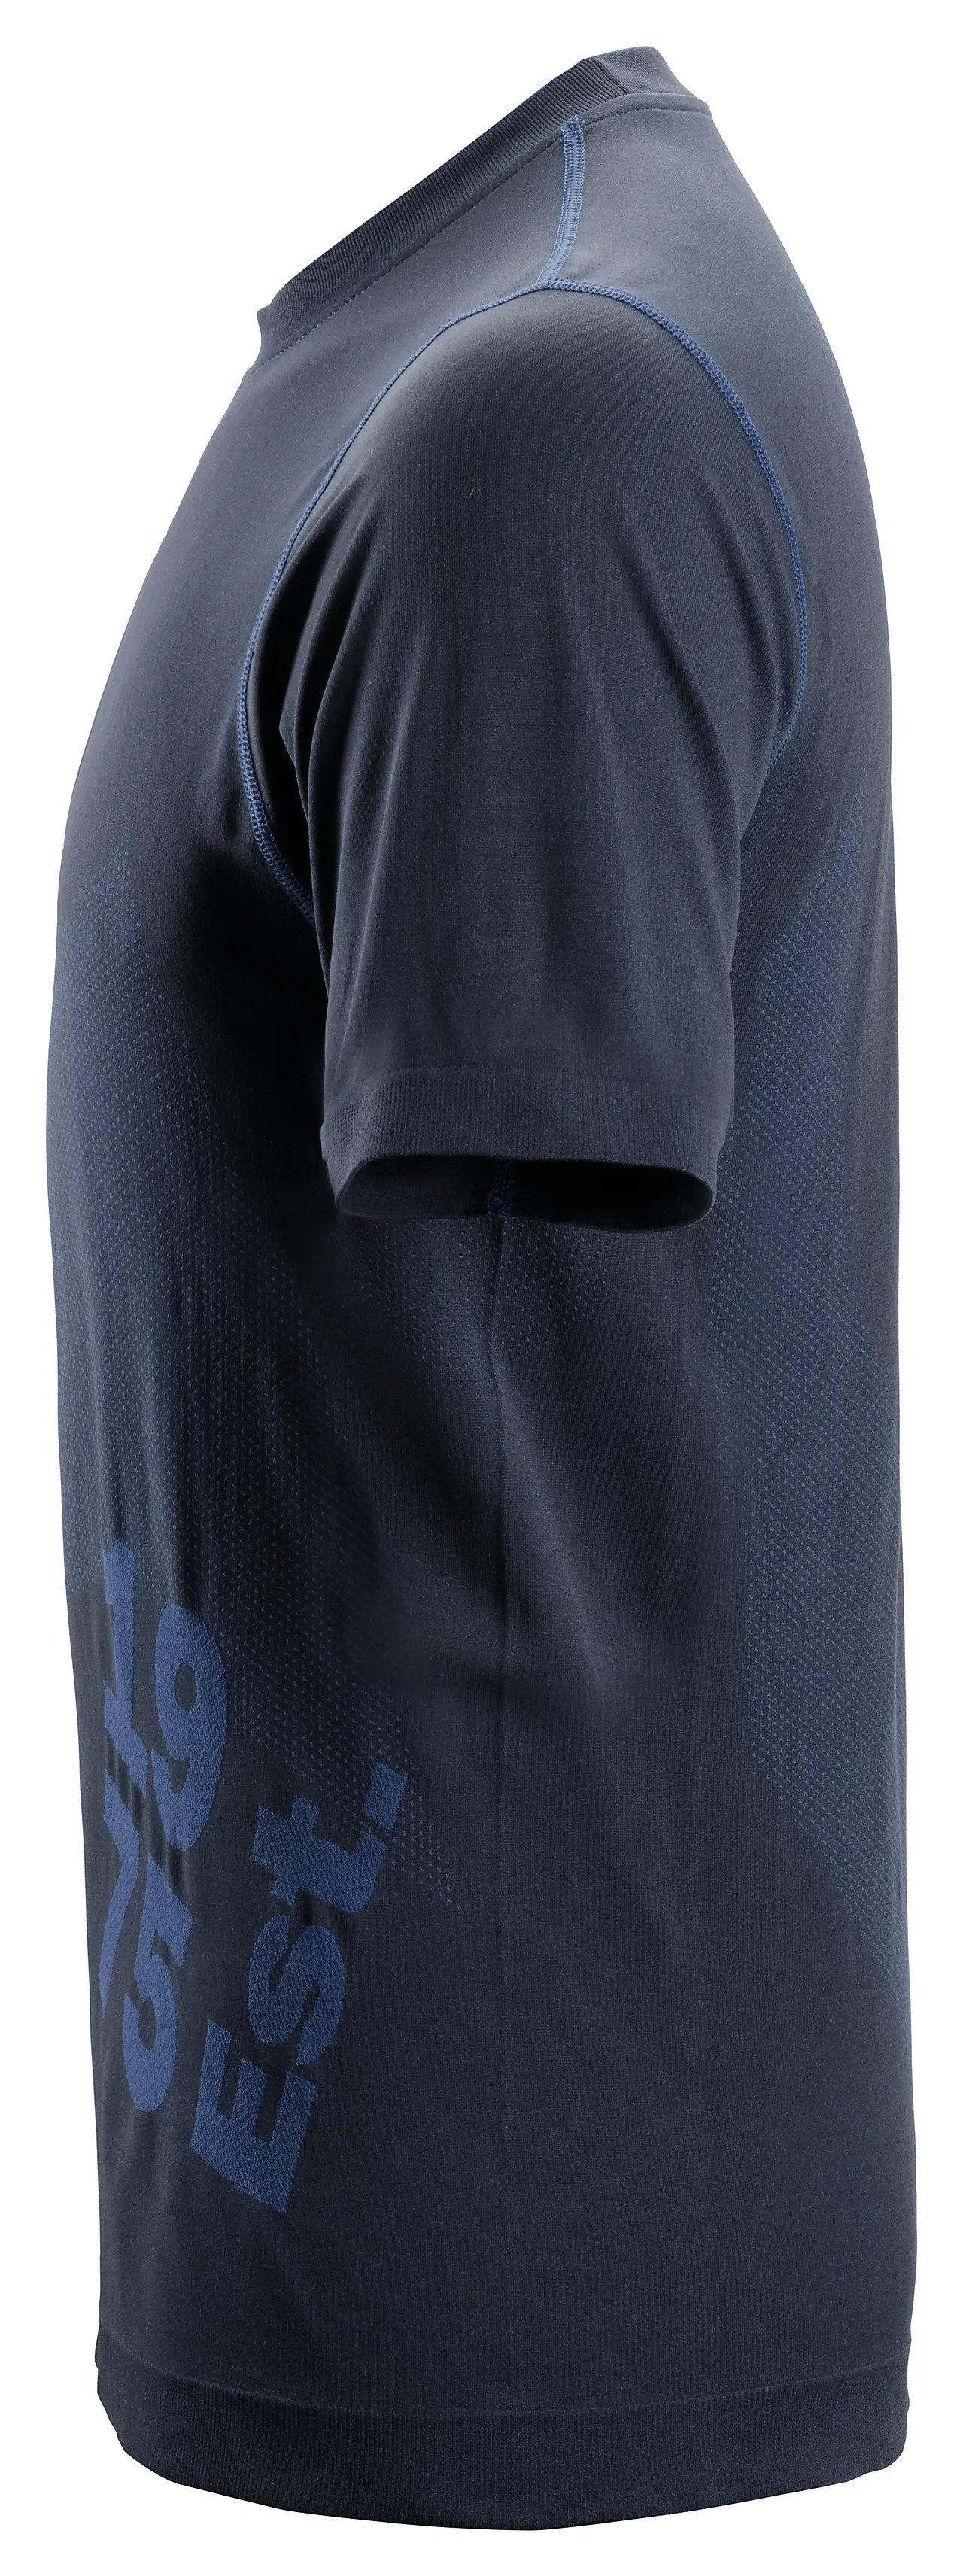 T-skjorte 2519 mørkeblå str M Snickers 37,5 tech flexiwork null - M - 3 - Miniatyr